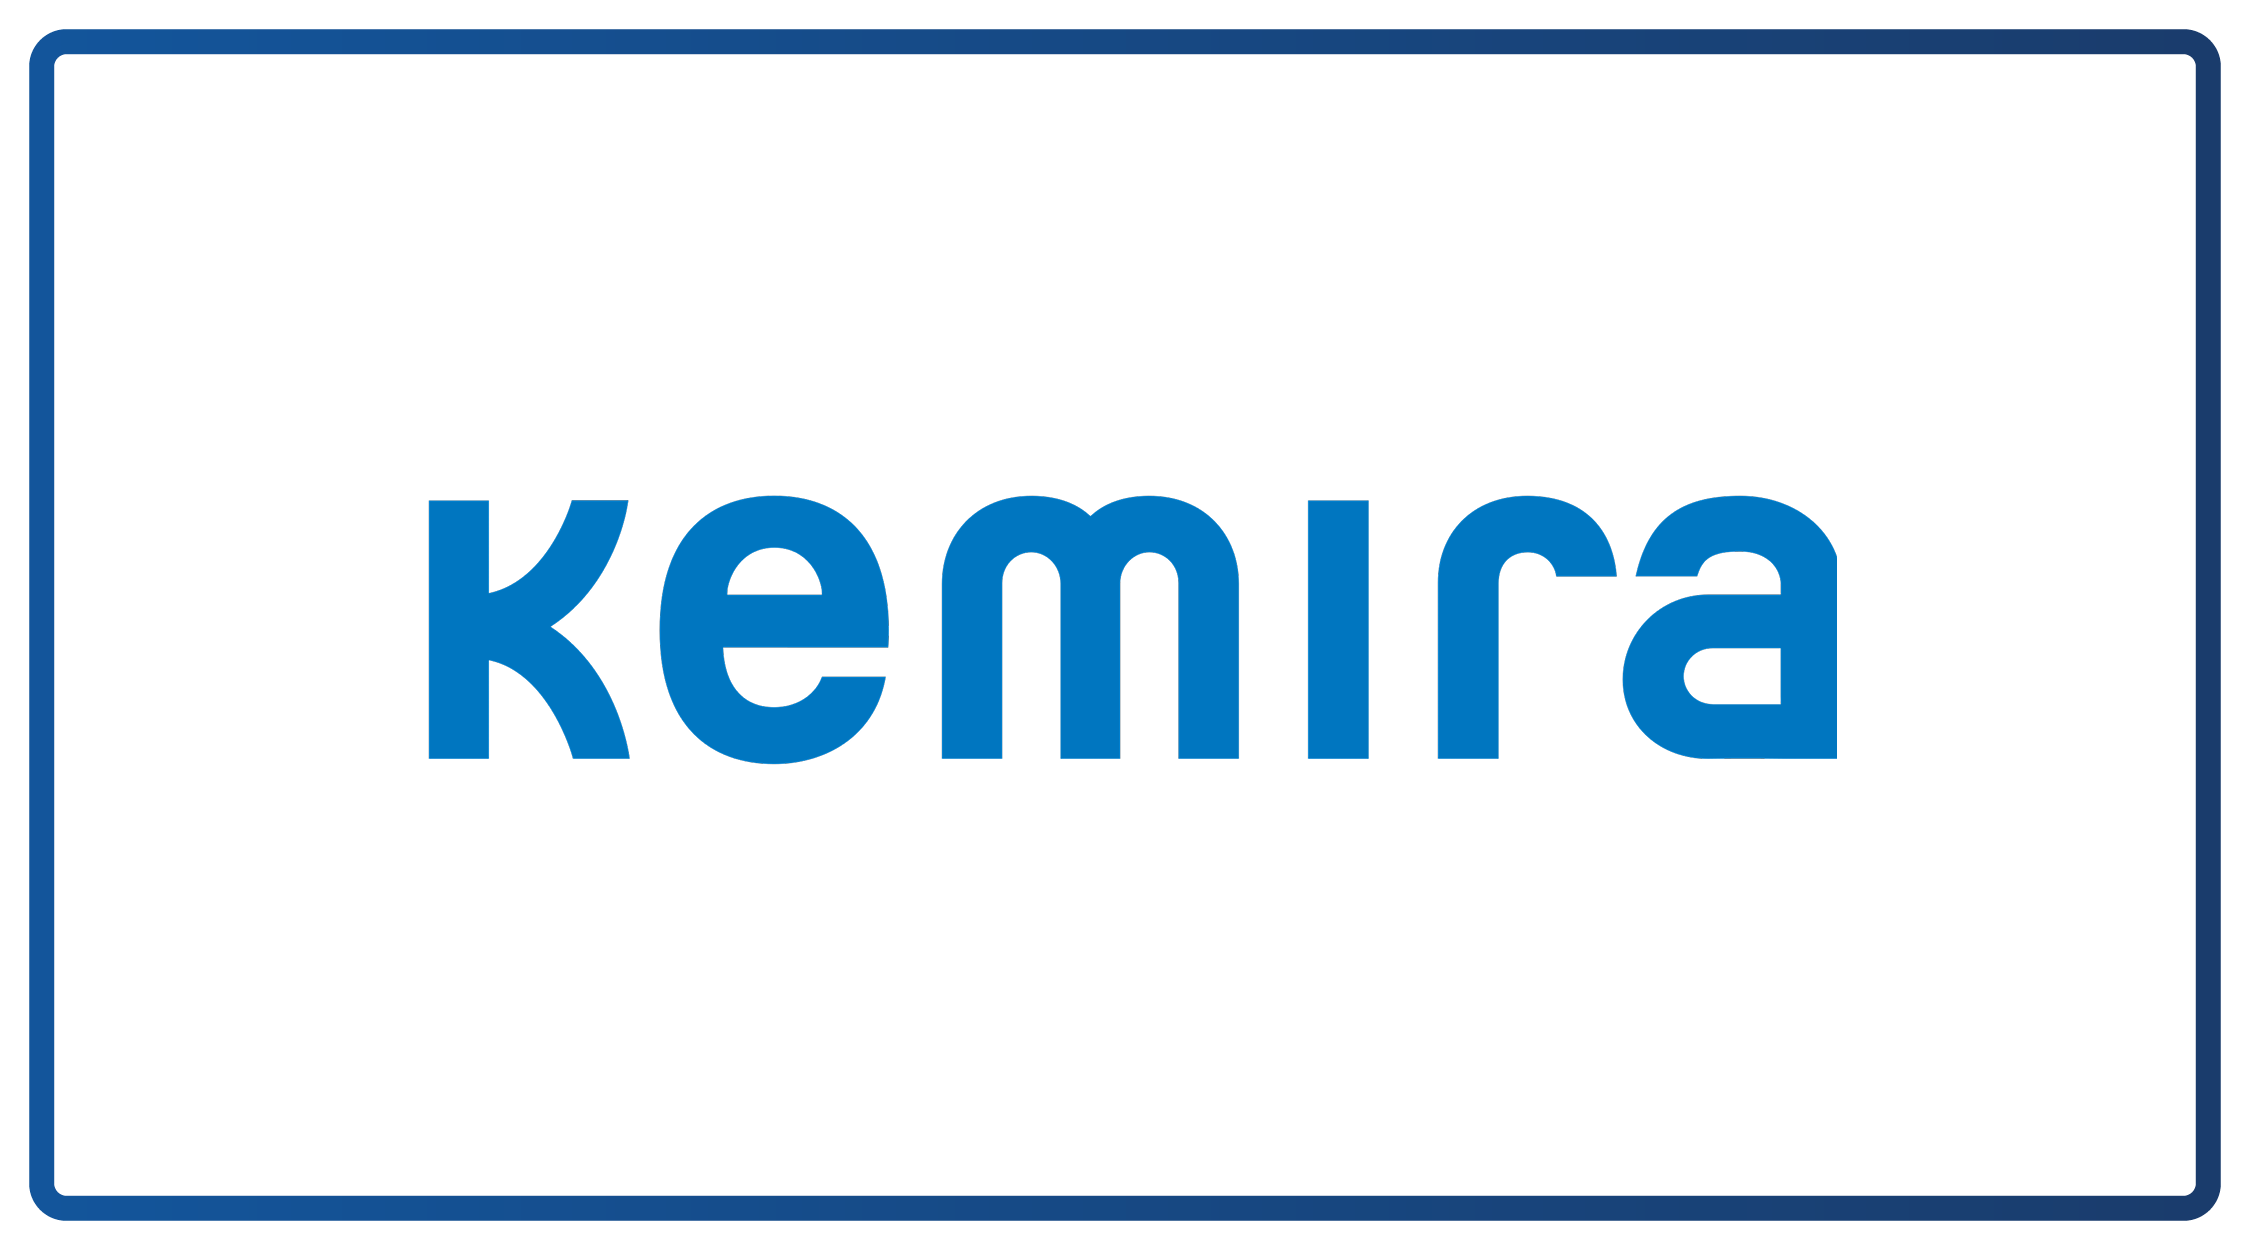 BTF24 Sponsor - KEMIRA